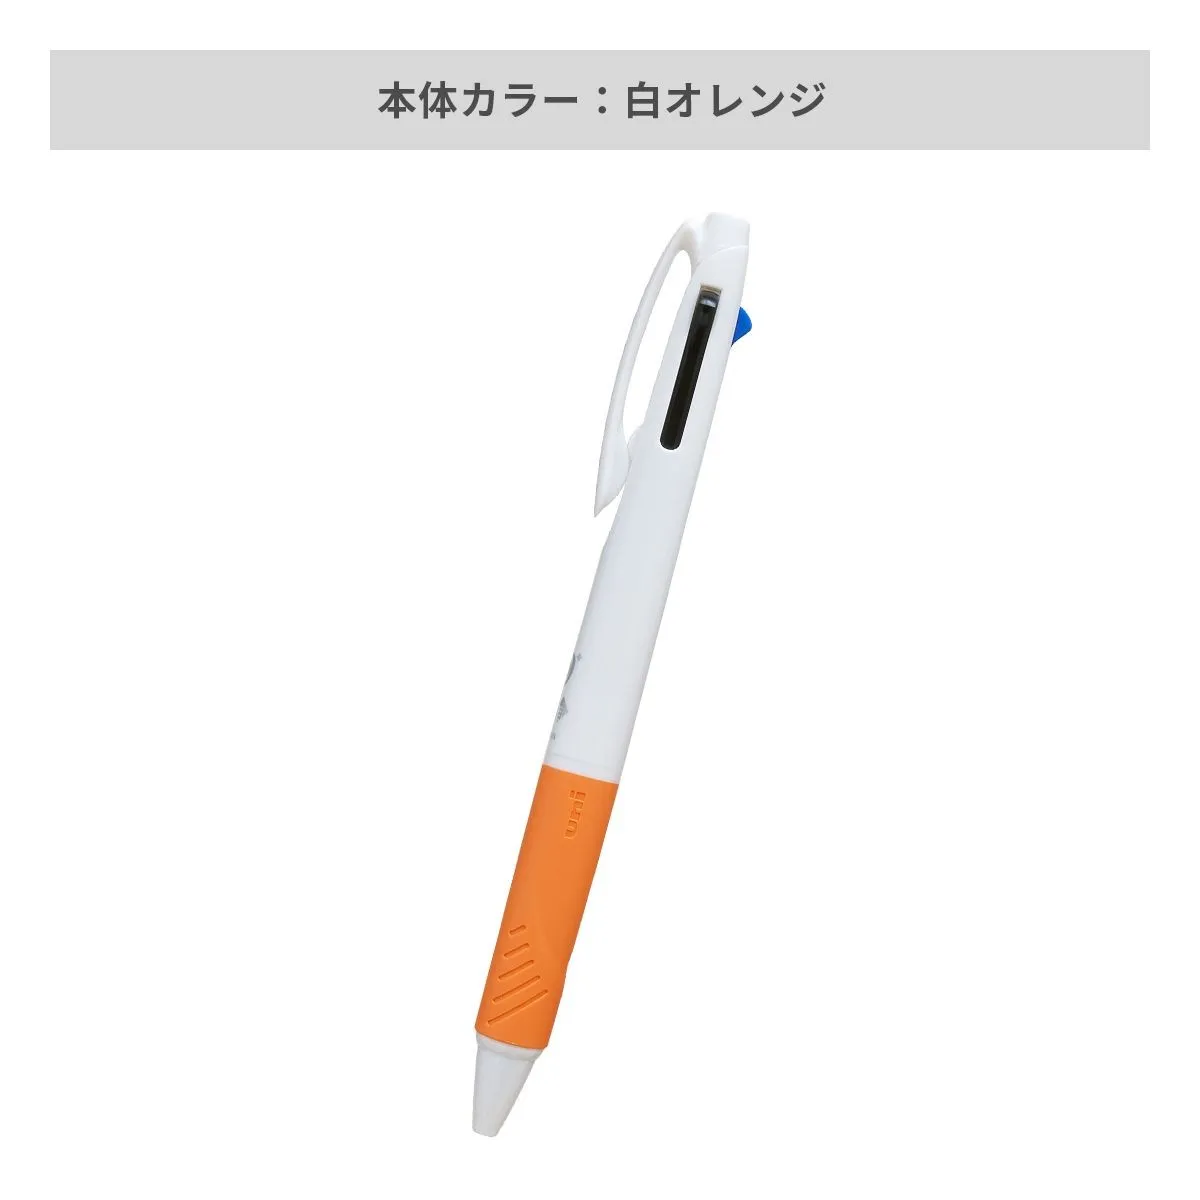 三菱鉛筆 ジェットストリーム 3色ボールペン AGピュア抗菌 白軸 0.7mm【名入れボールペン / インクジェット印刷】 画像4